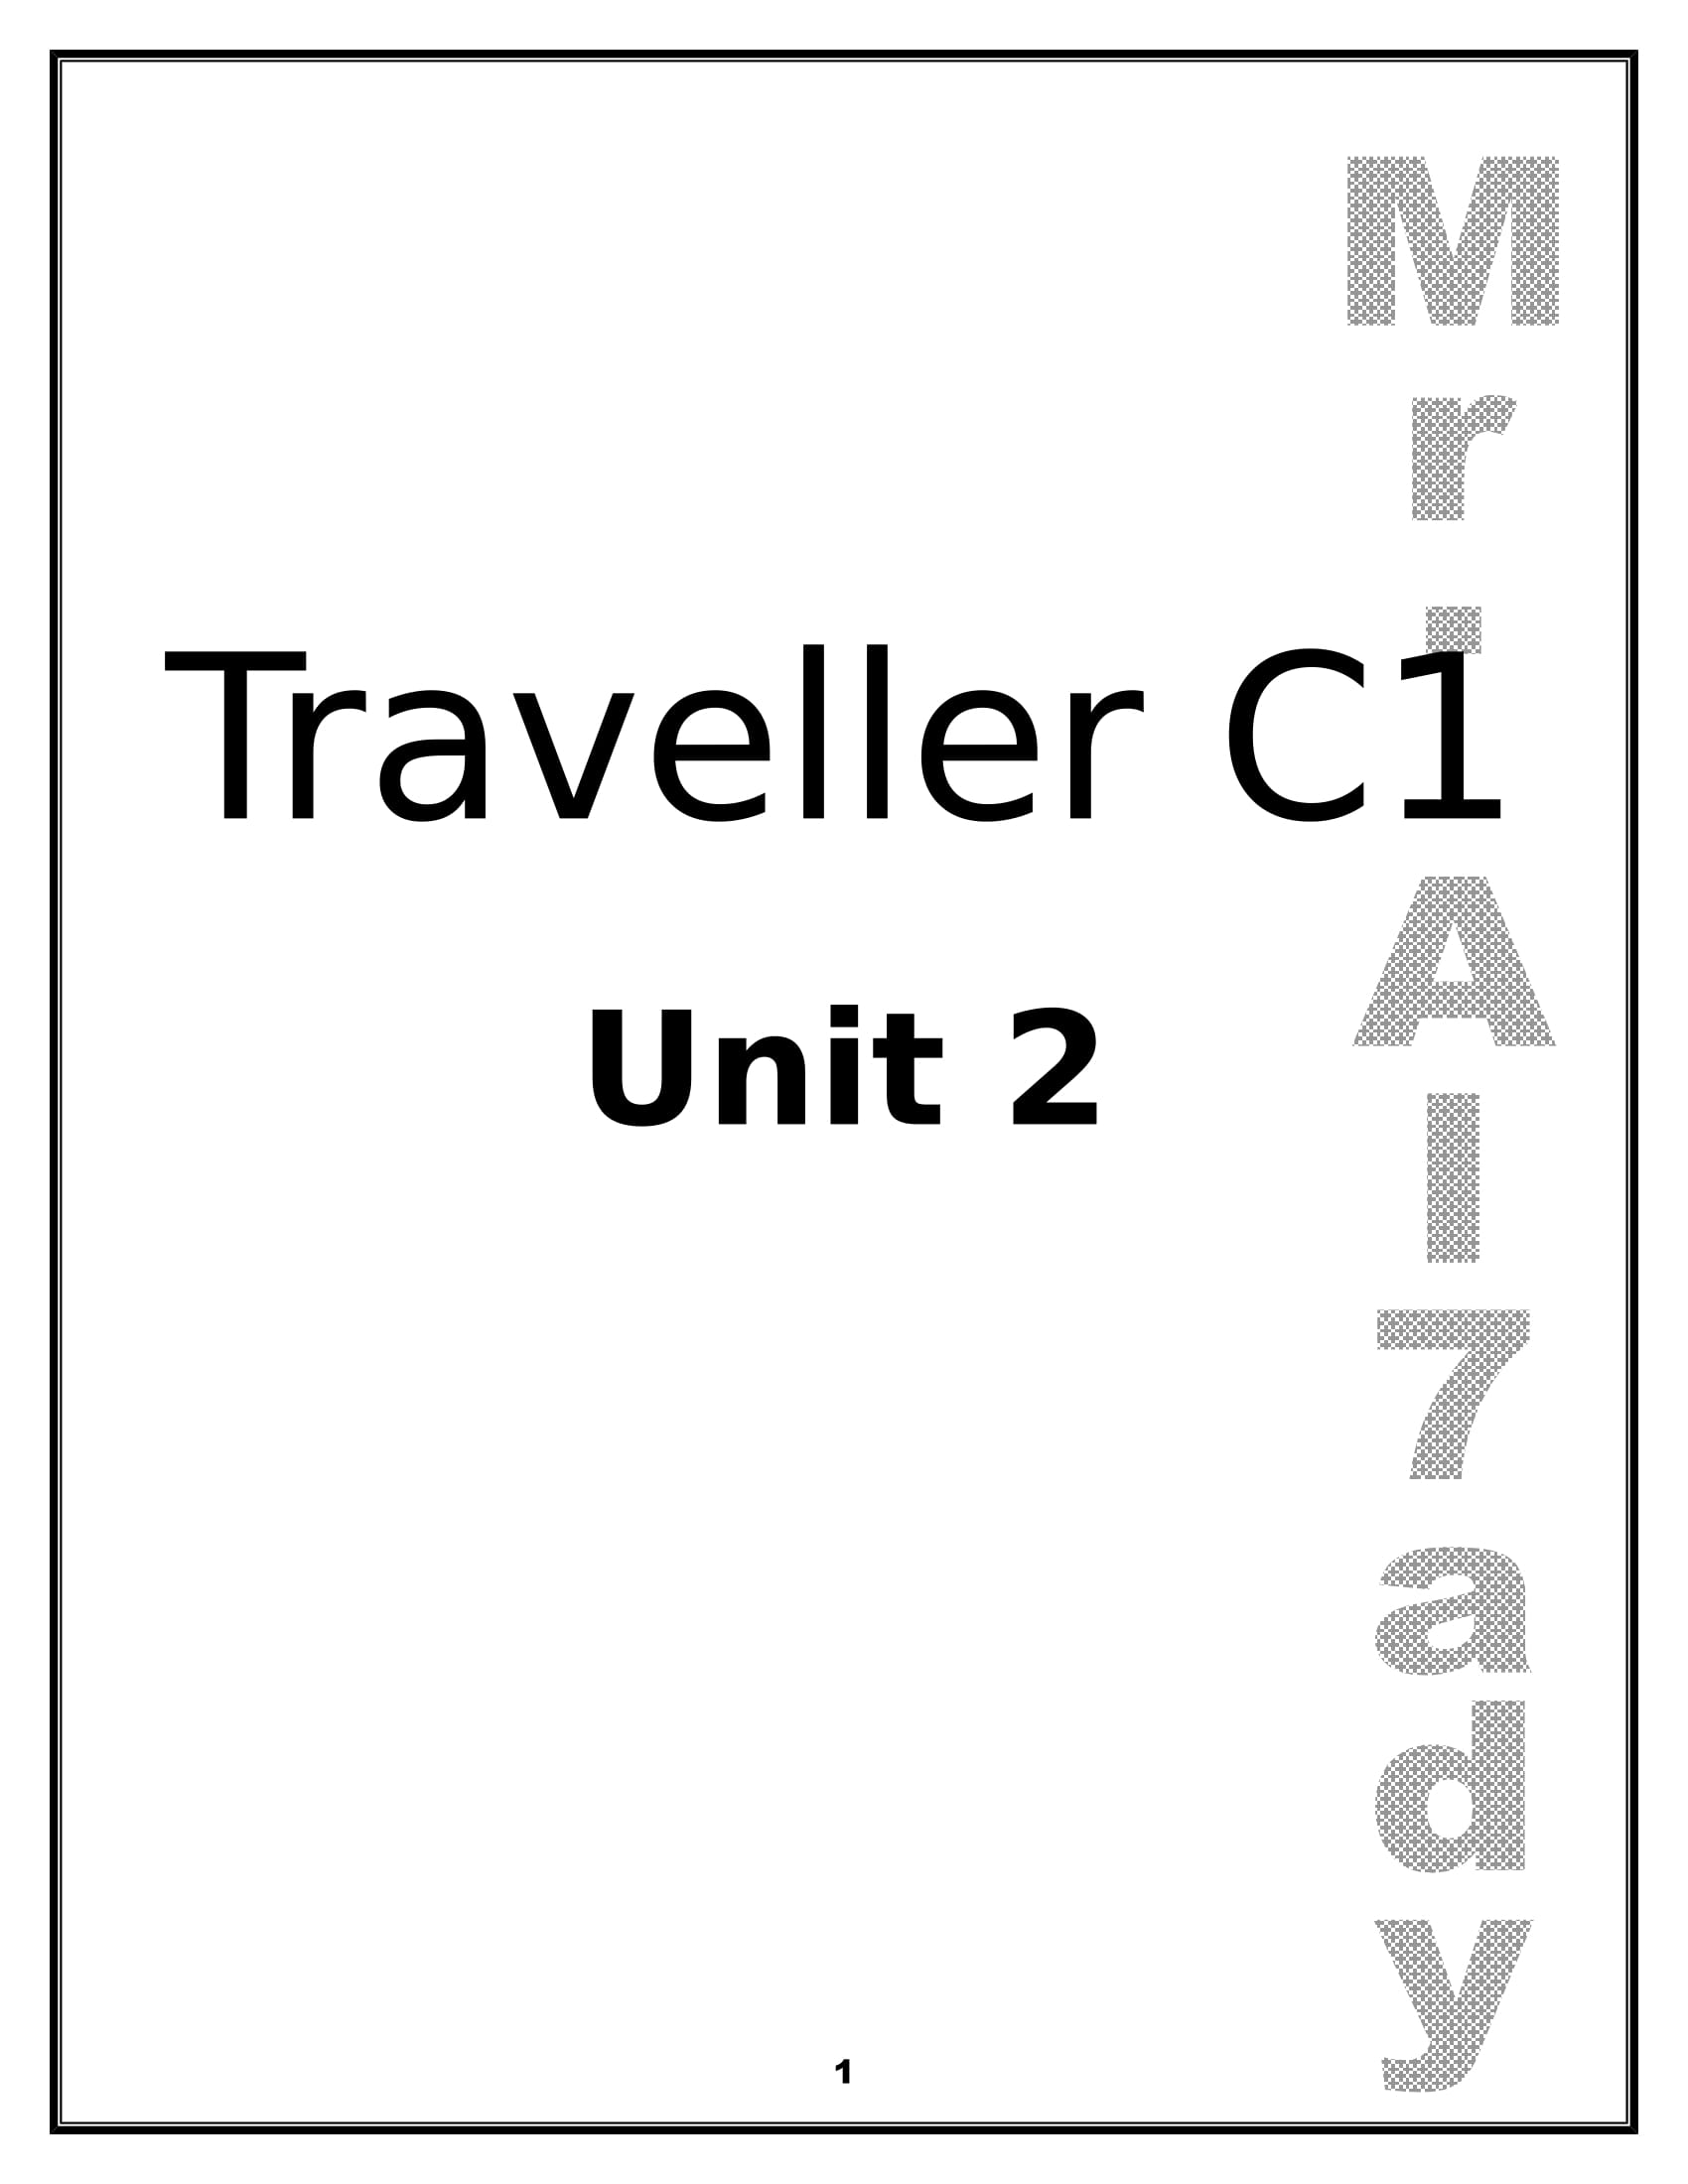 اسئلة Unit 2 لمنهج traveller C1 فى اللغة الانجليزية للصف الثانى الثانوى اللغات الترم الاول